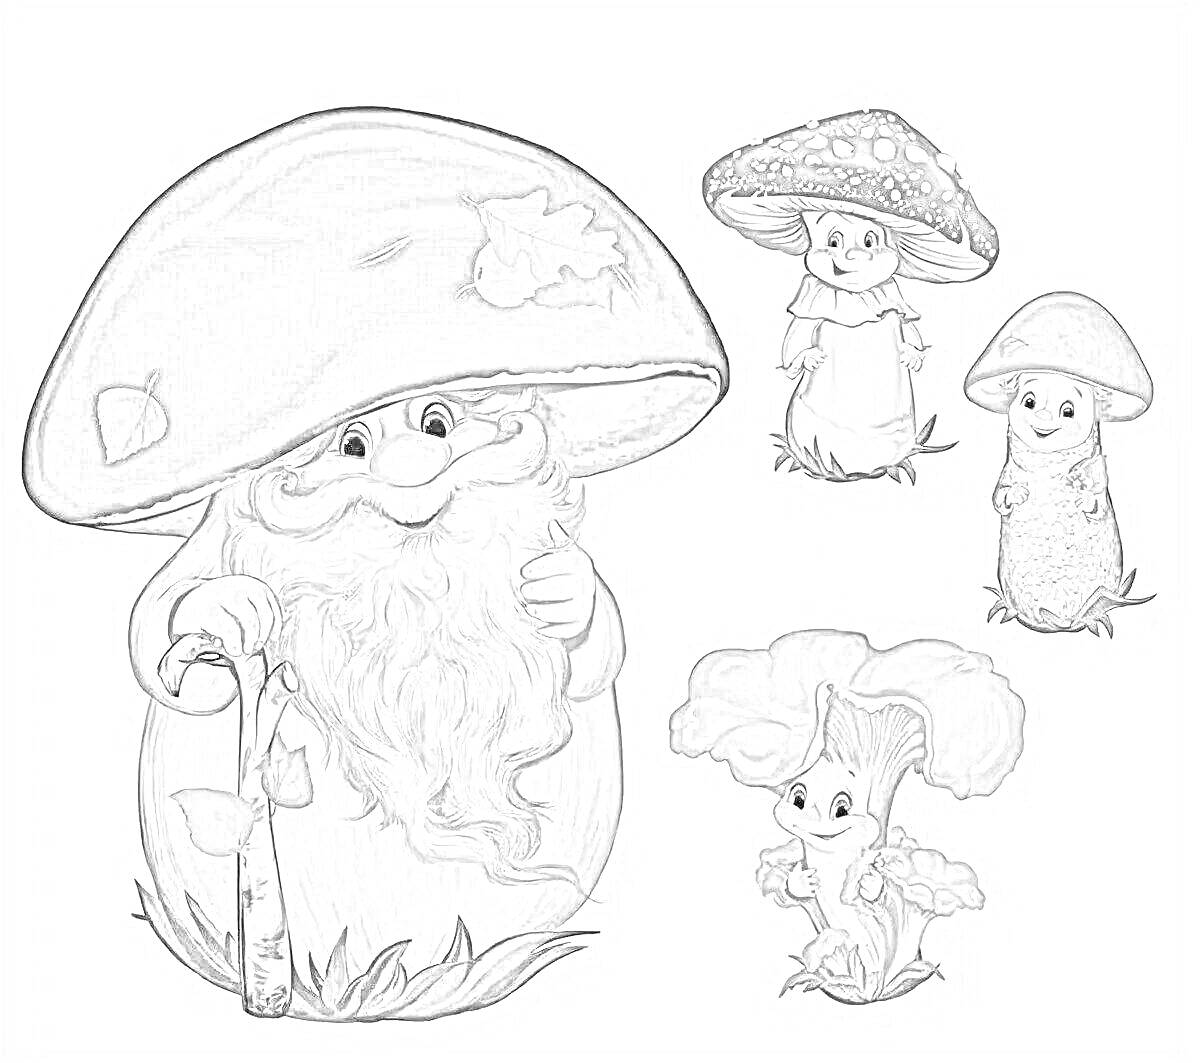 Раскраска Три грибочка с лицами и бородатый старичок с шляпой-грибом и посохом